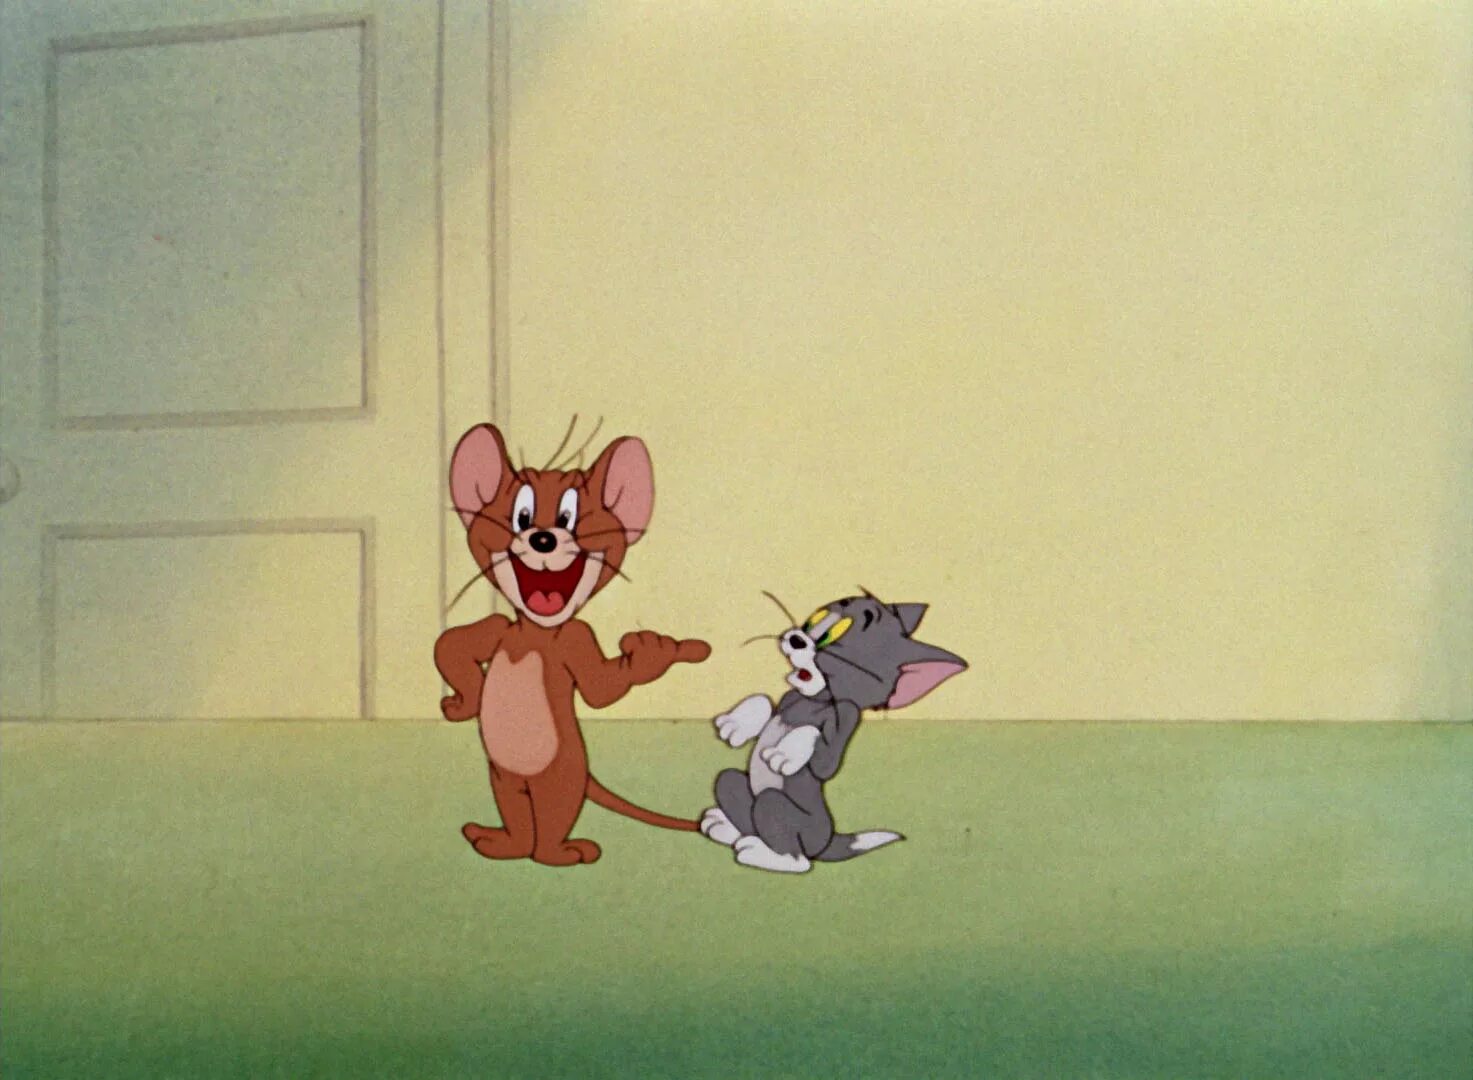 Доктор Джекилл и Мистер мышь. Том и Джерри доктор Джекилл. Том и Джерри доктор Джекилл и Мистер мышь 1947. Доктор джерри